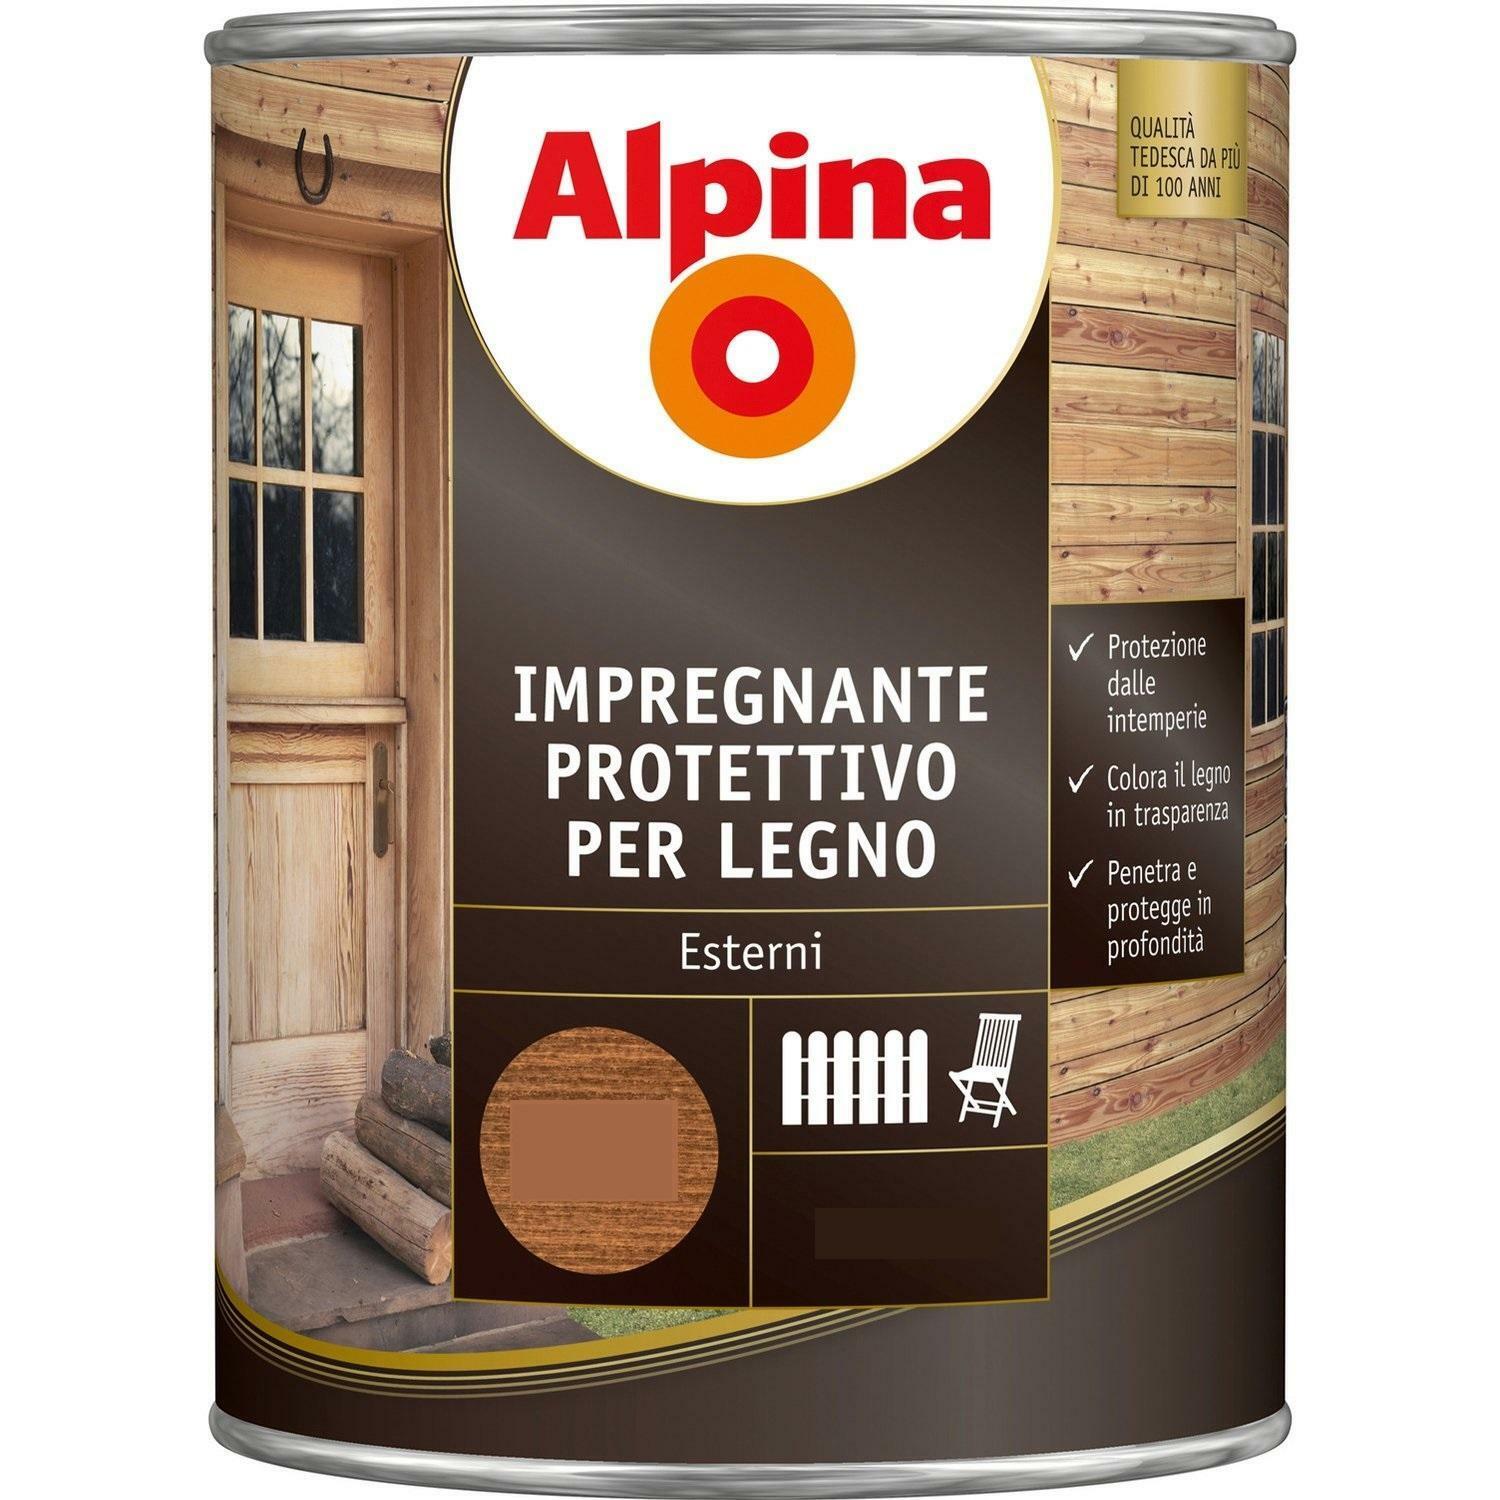 alpina alpina impregnante protettivo per legno colore ebano 2,5 litri